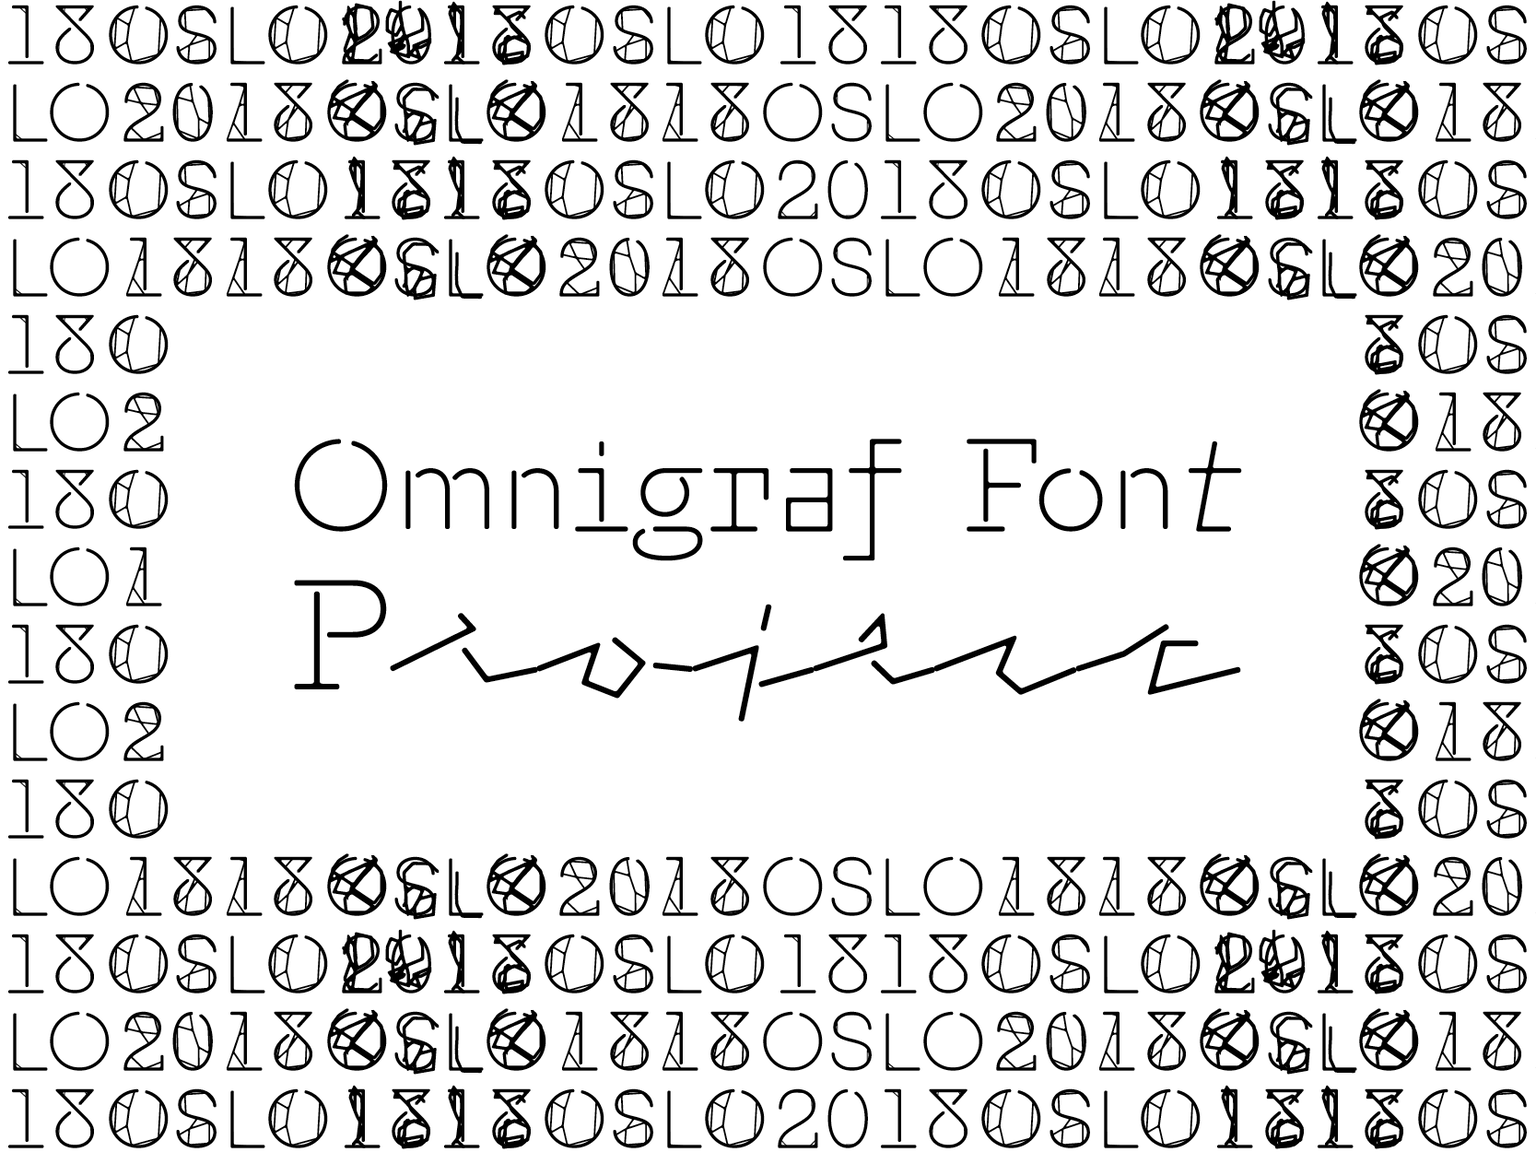 Omnigraf Font Project 